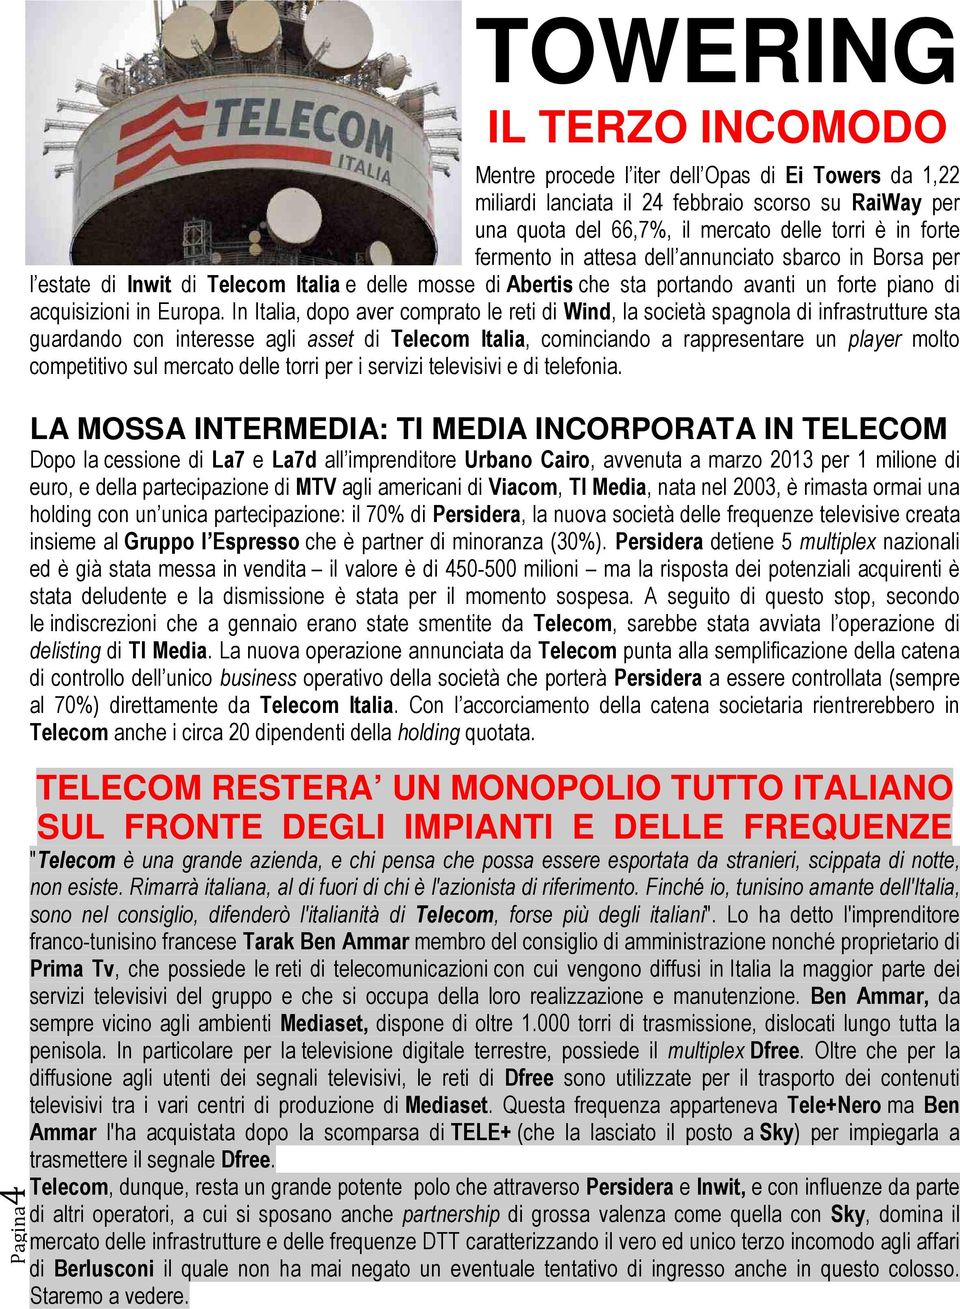 In Italia, dopo aver comprato le reti di Wind, la società spagnola di infrastrutture sta guardando con interesse agli asset di Telecom Italia, cominciando a rappresentare un player molto competitivo